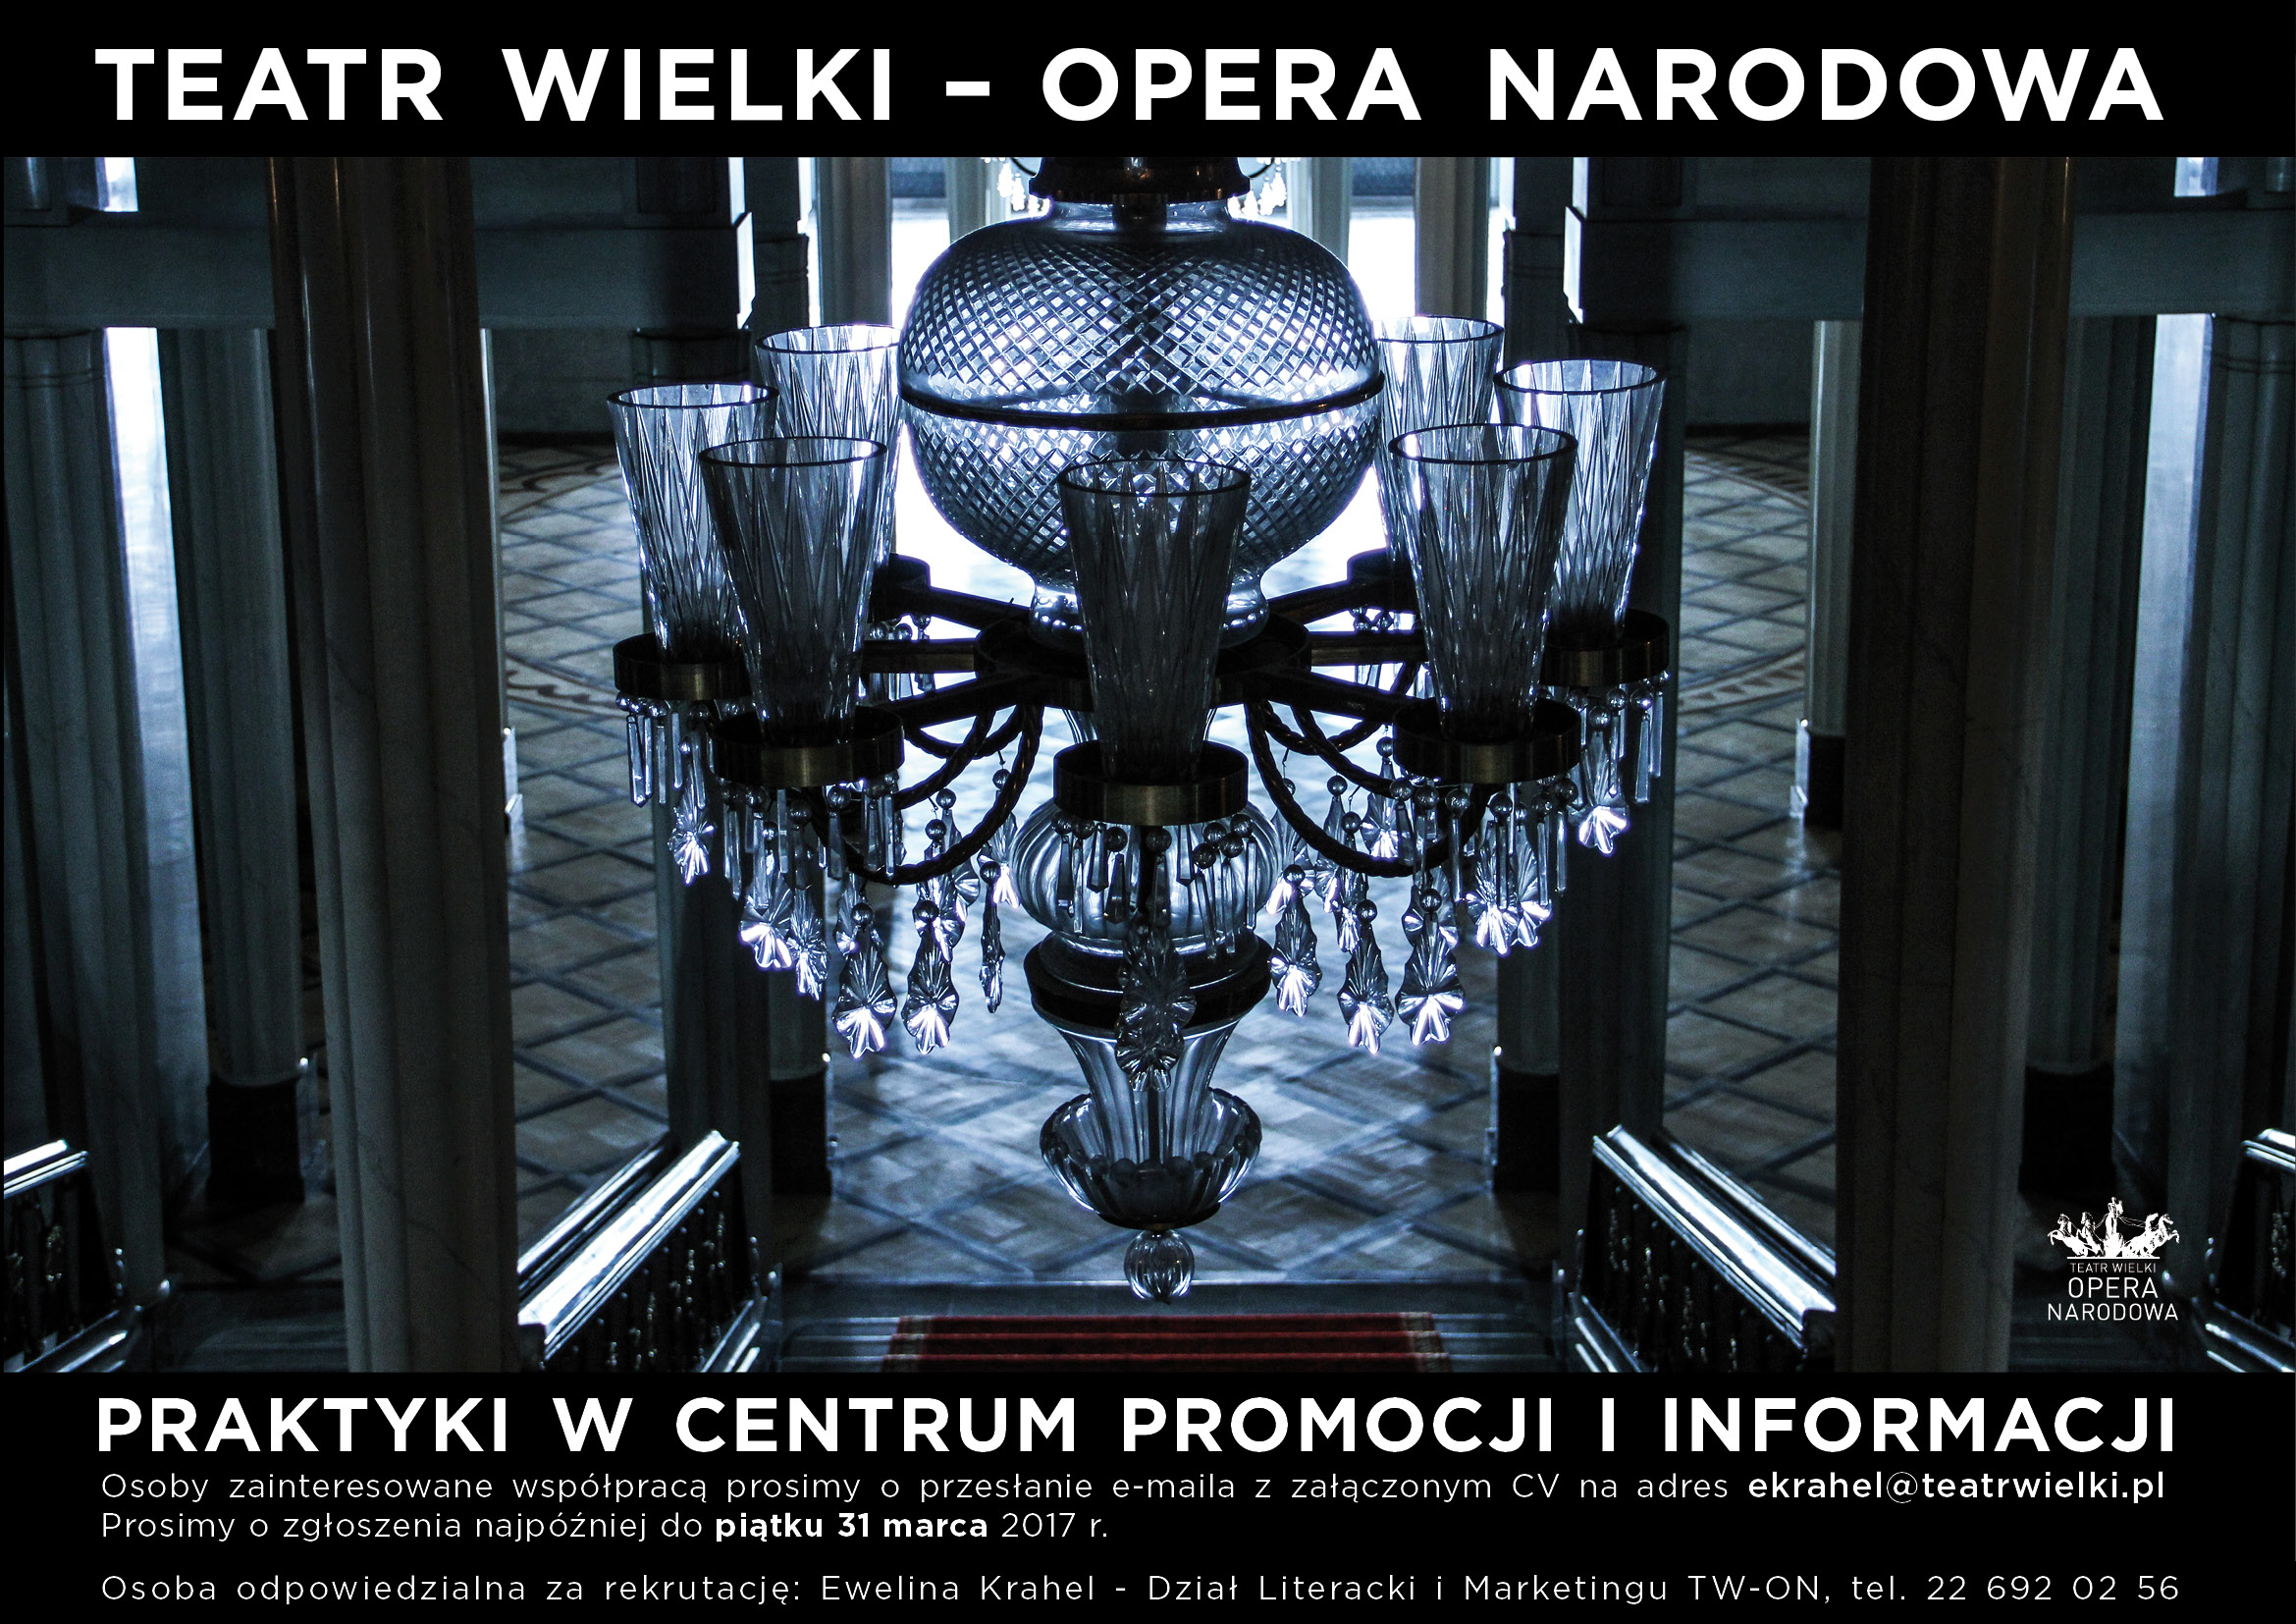 na zdjęciu wielki kryształowy żyrandol, w tle wnętrze korytarza w Teatrze Wielkim-Operze Narodowej, na dole powtórzony tekst z informacją o naborze